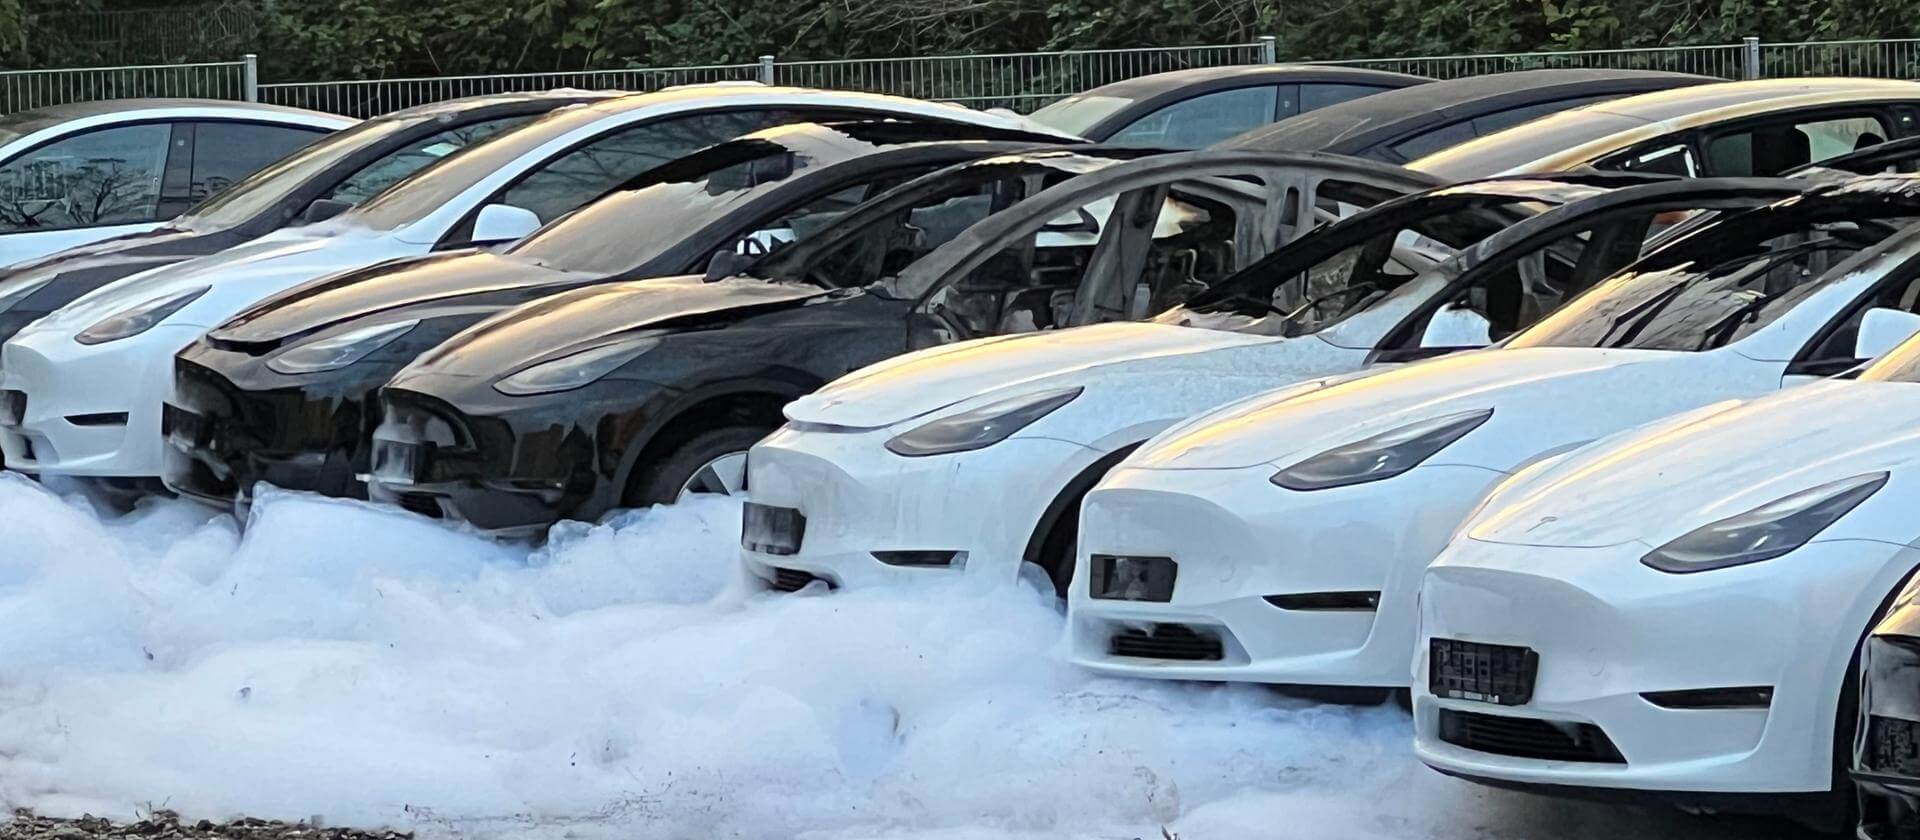 15 Tesla’s branden in Frankfurt, groep claimt verantwoordelijkheid voor vurig incident